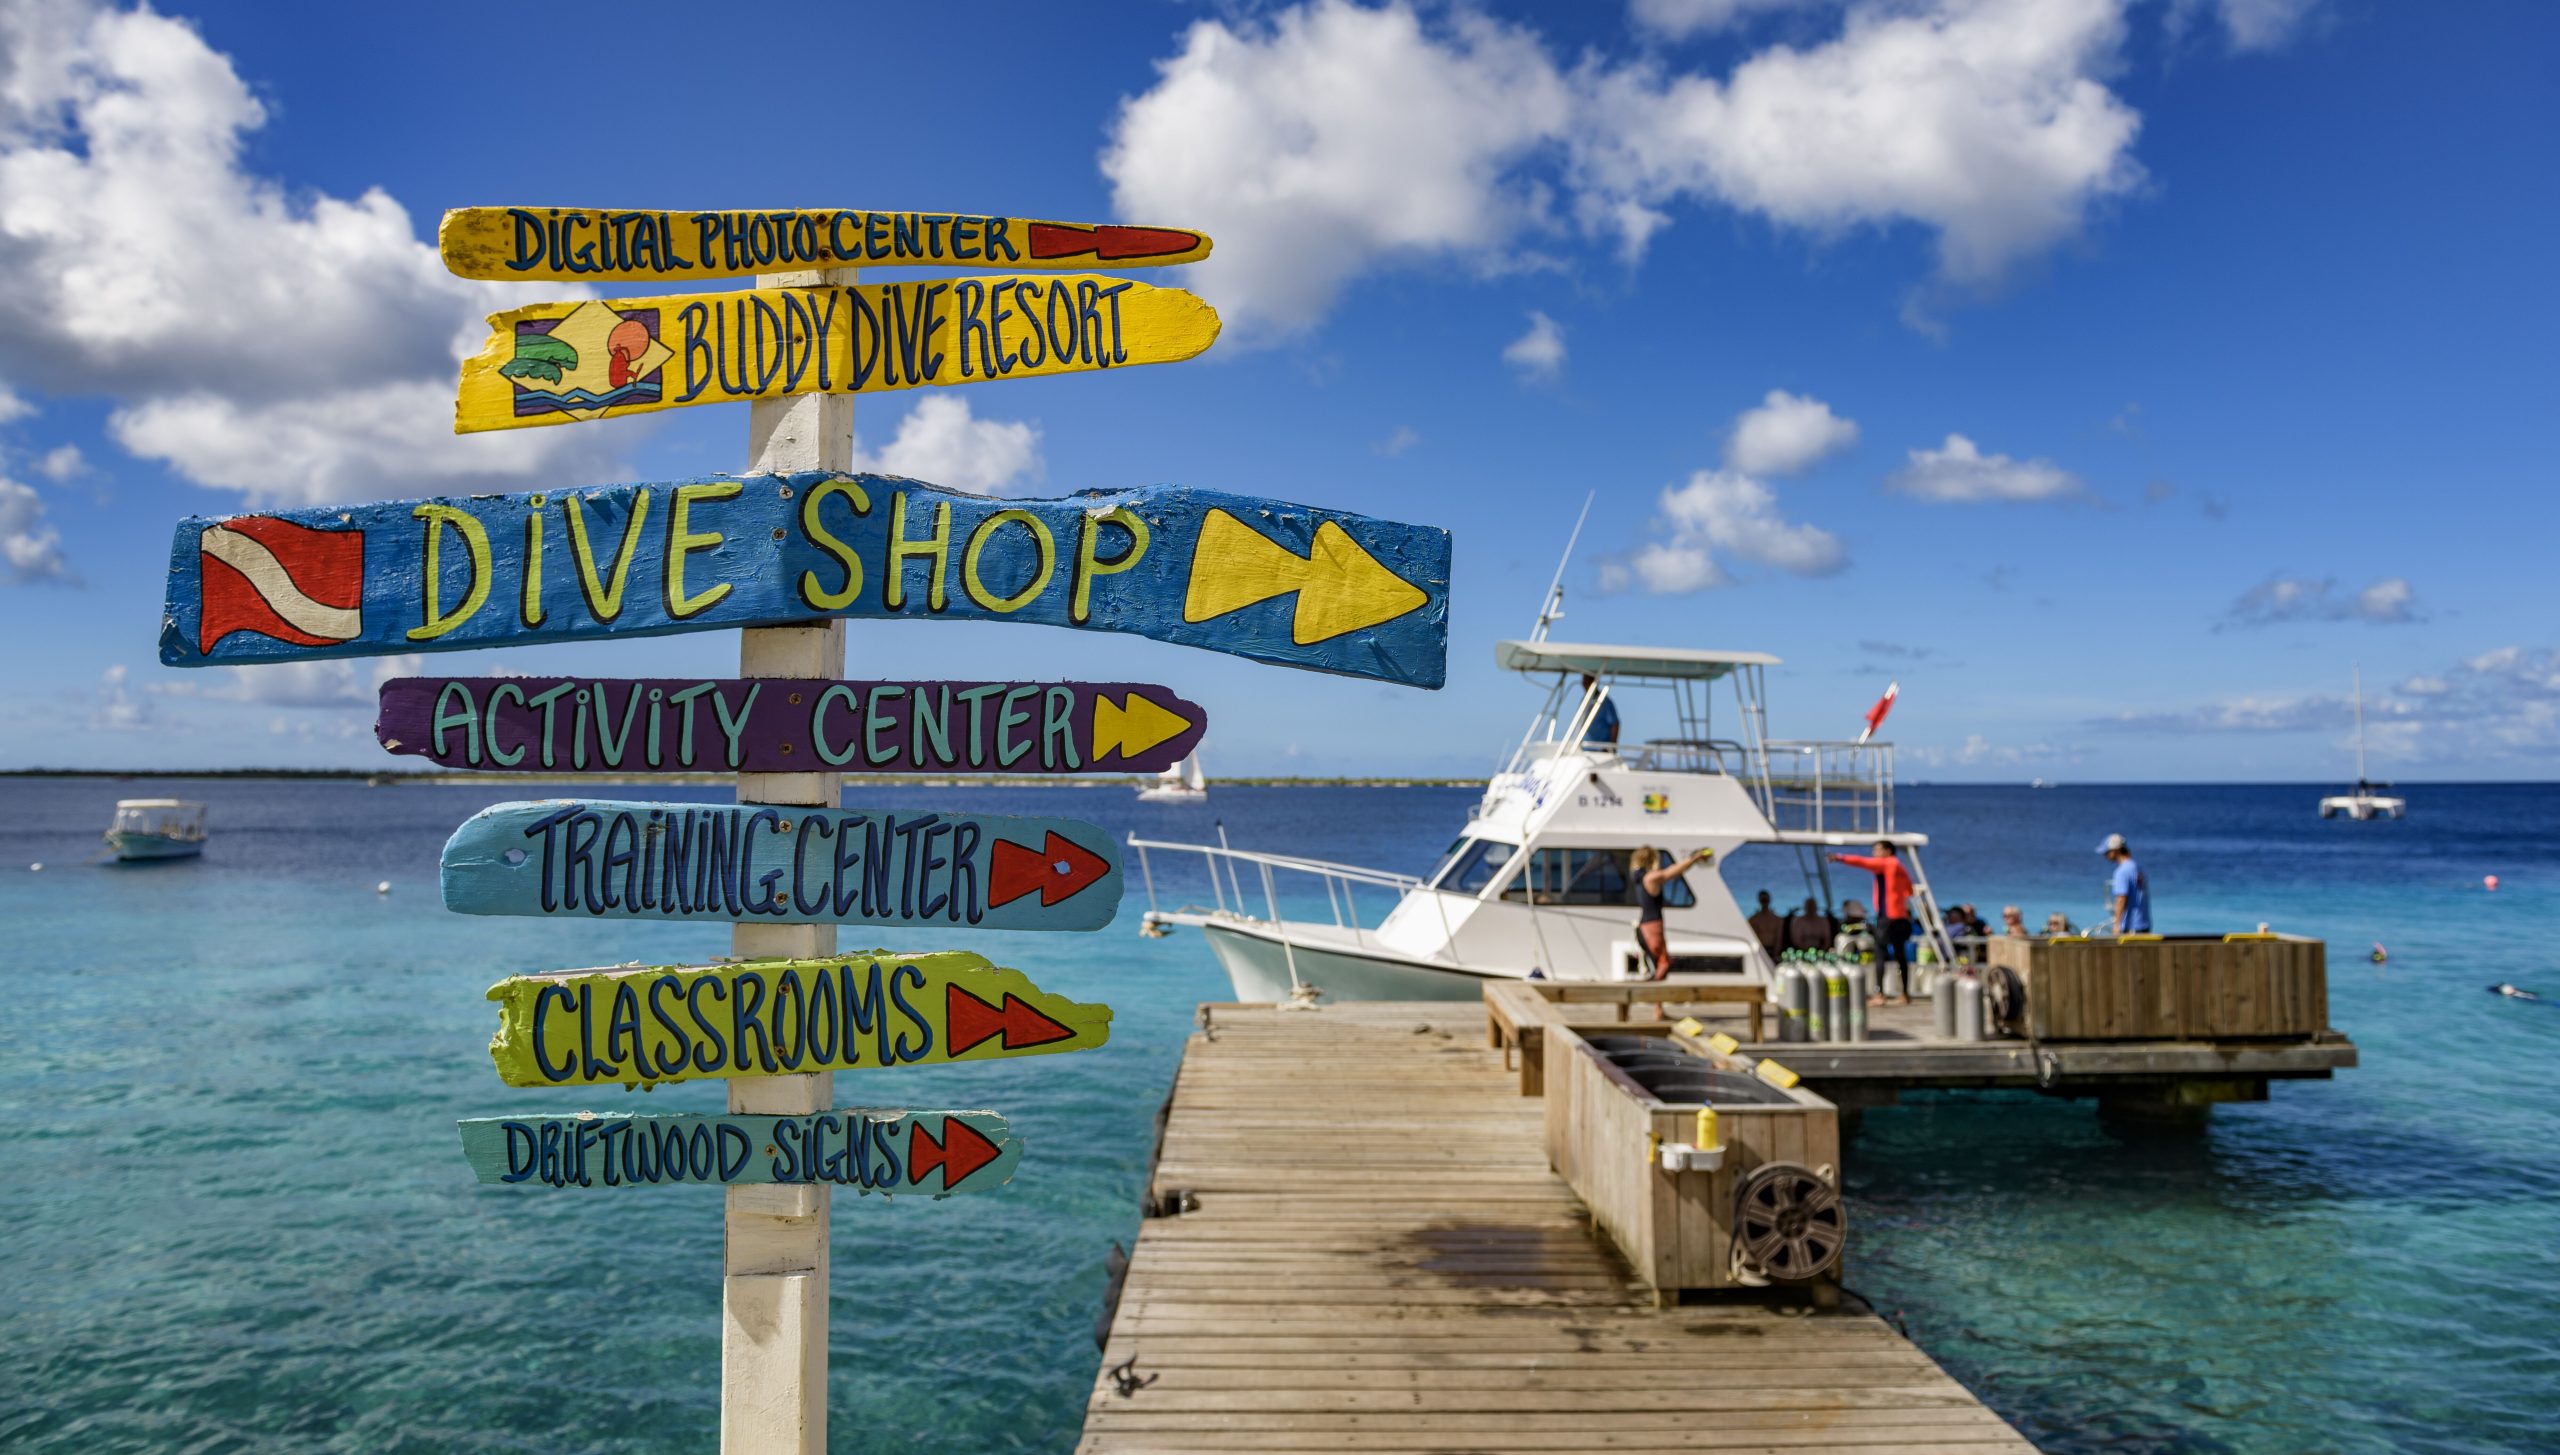 Buddy Dive Resort - Bonaire dive dock